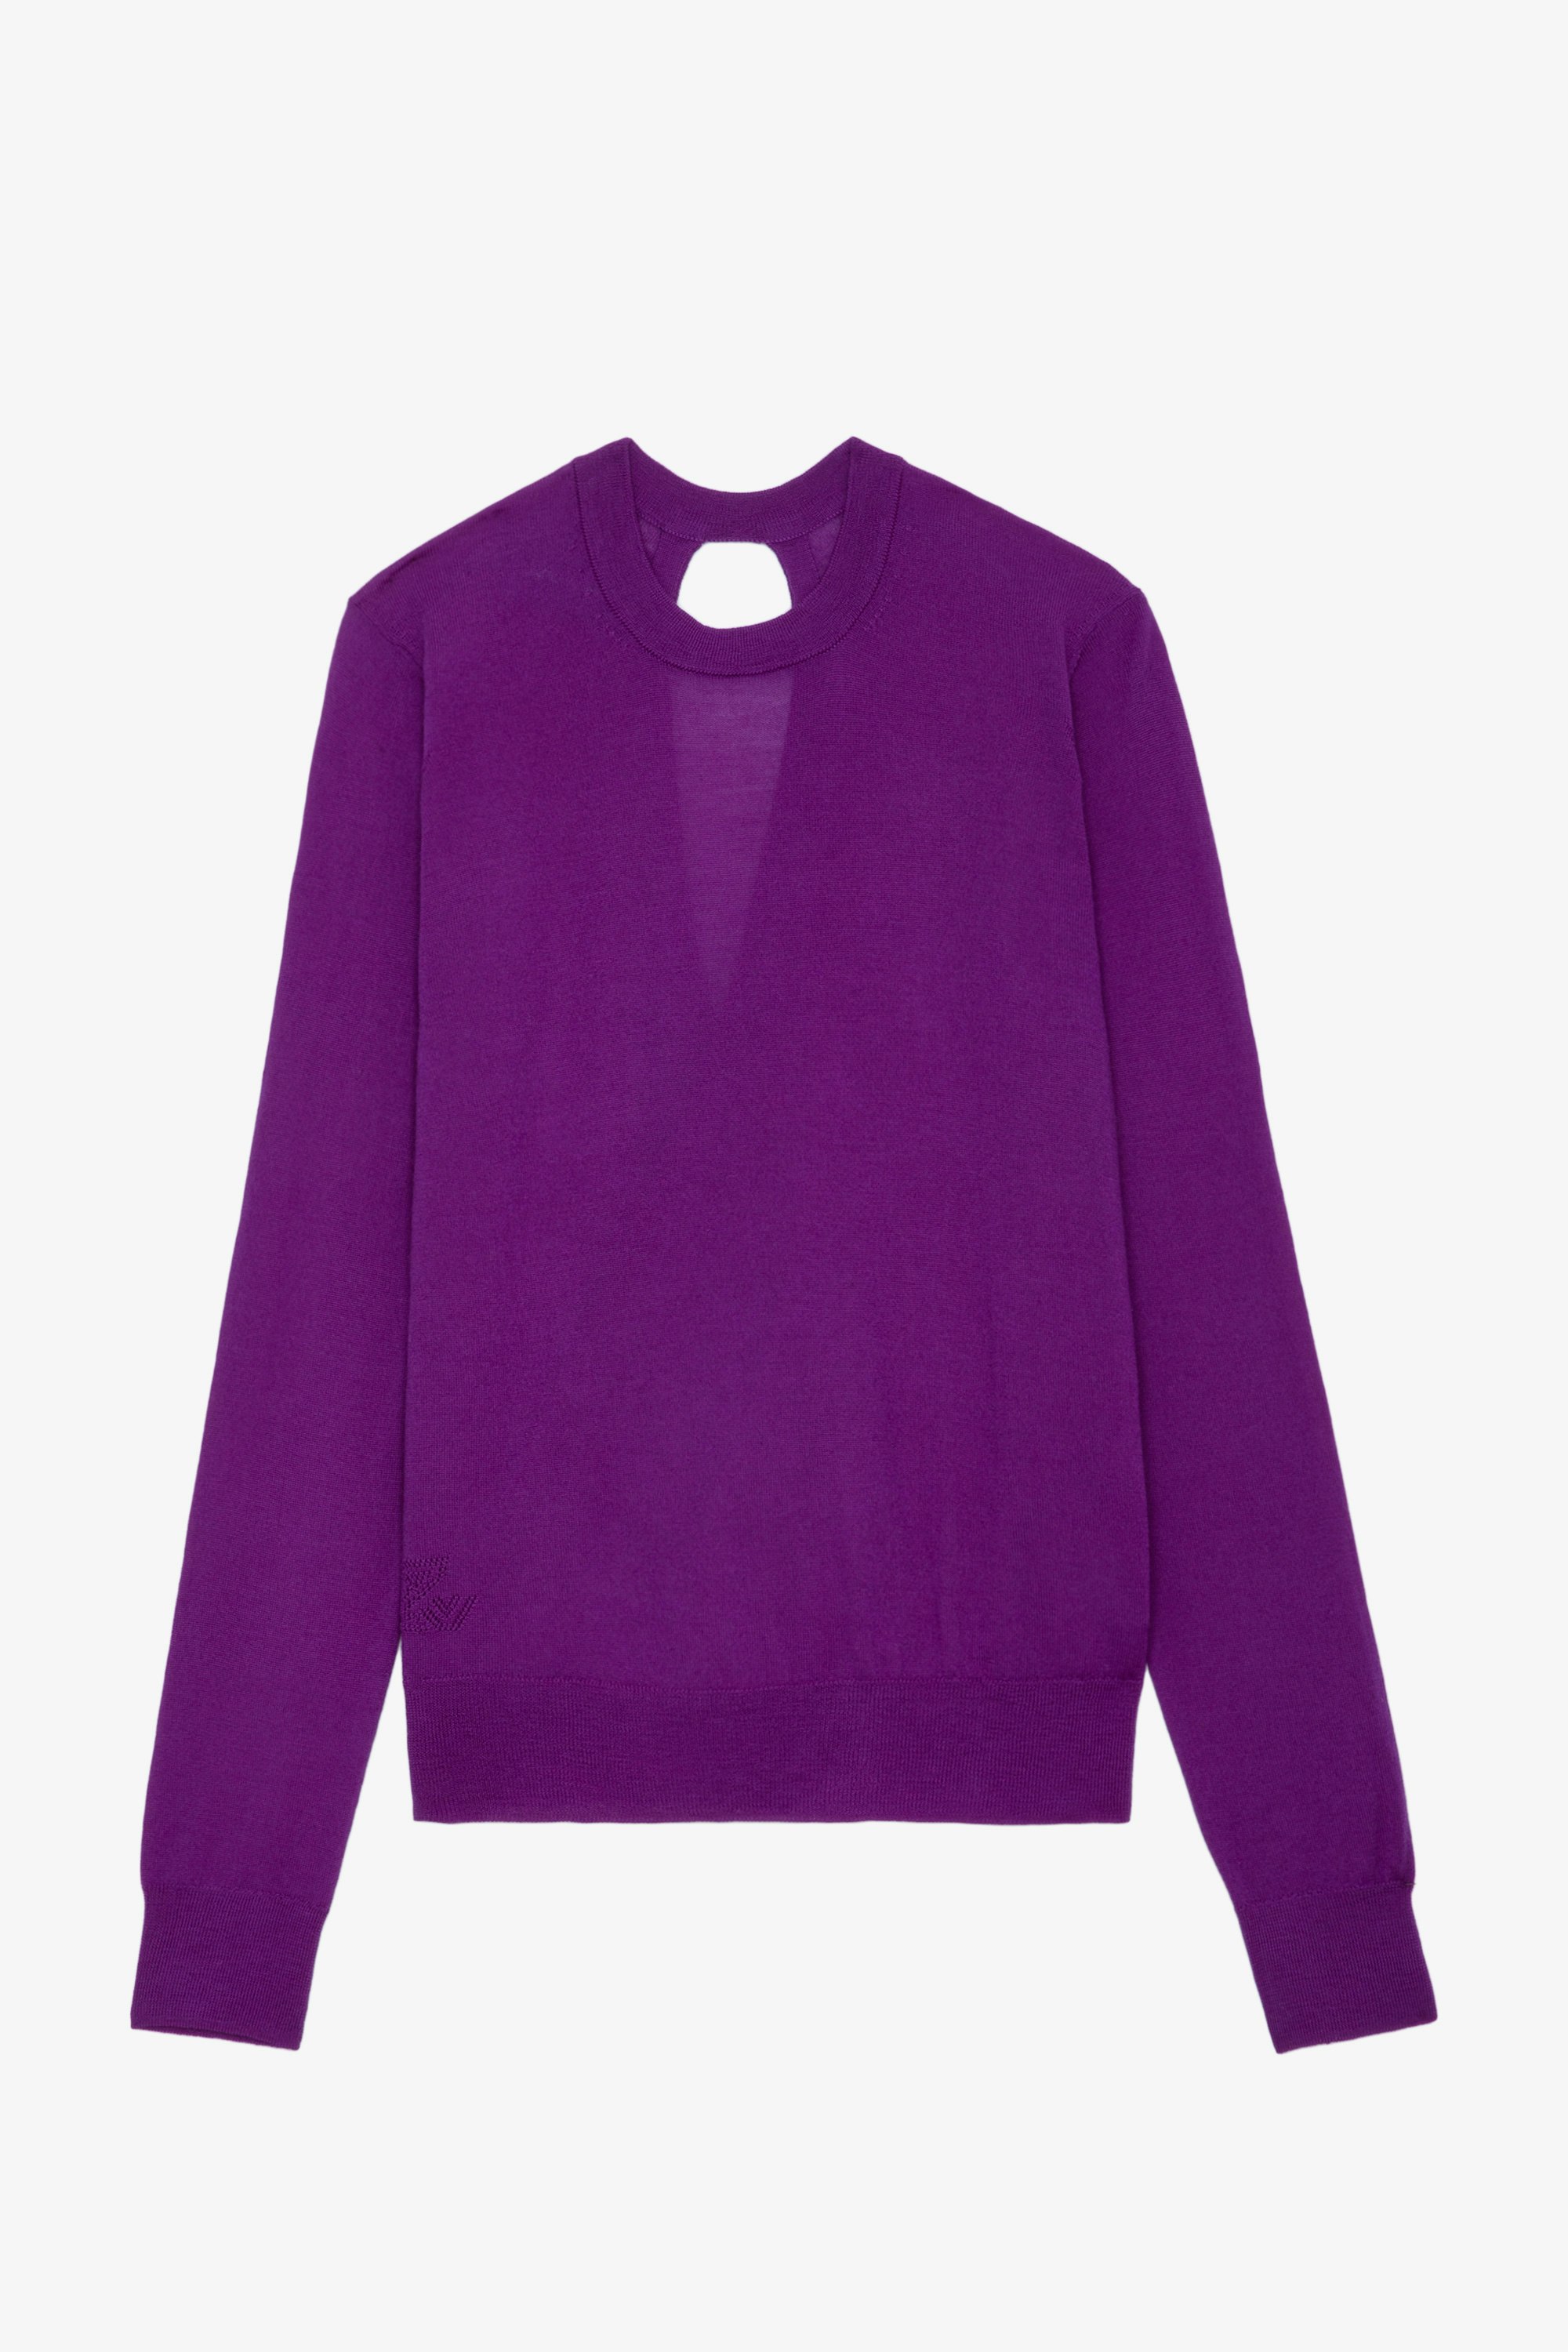 Jersey Emma - Jersey violeta de lana merina con cuello redondo, mangas largas y espalda cruzada y abierta.